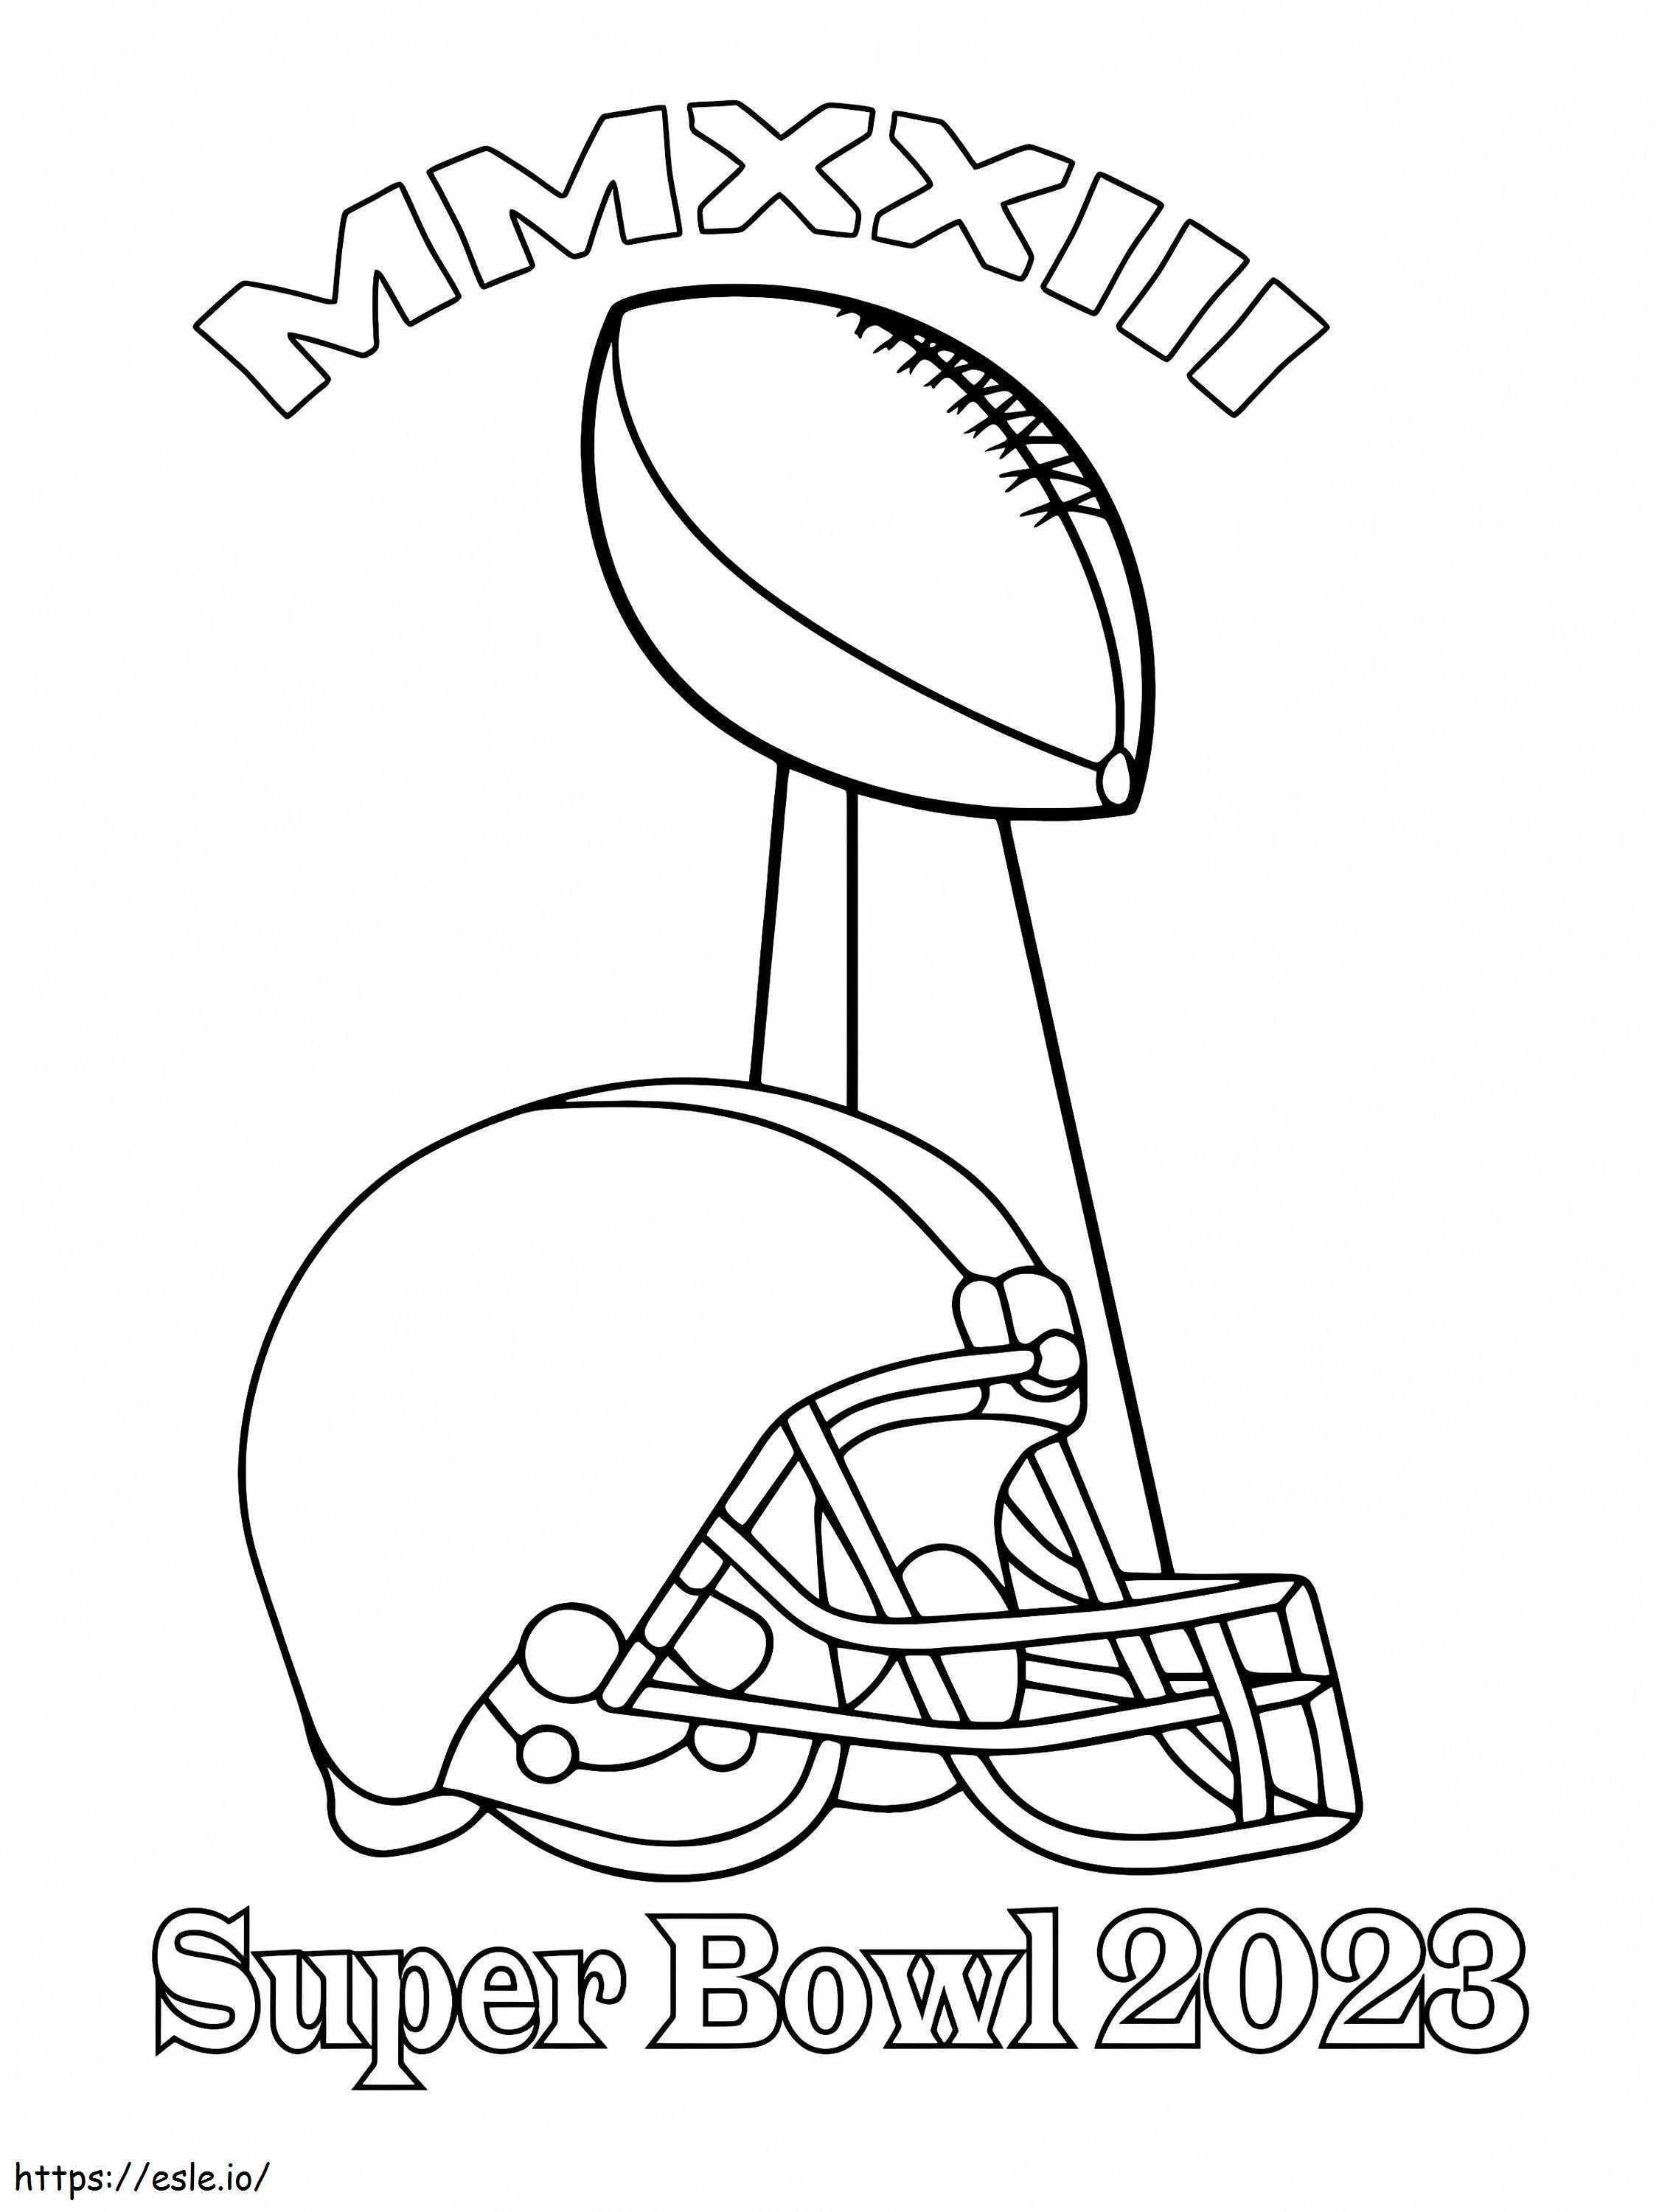 Coloriage Super Bowl 2023 à imprimer dessin